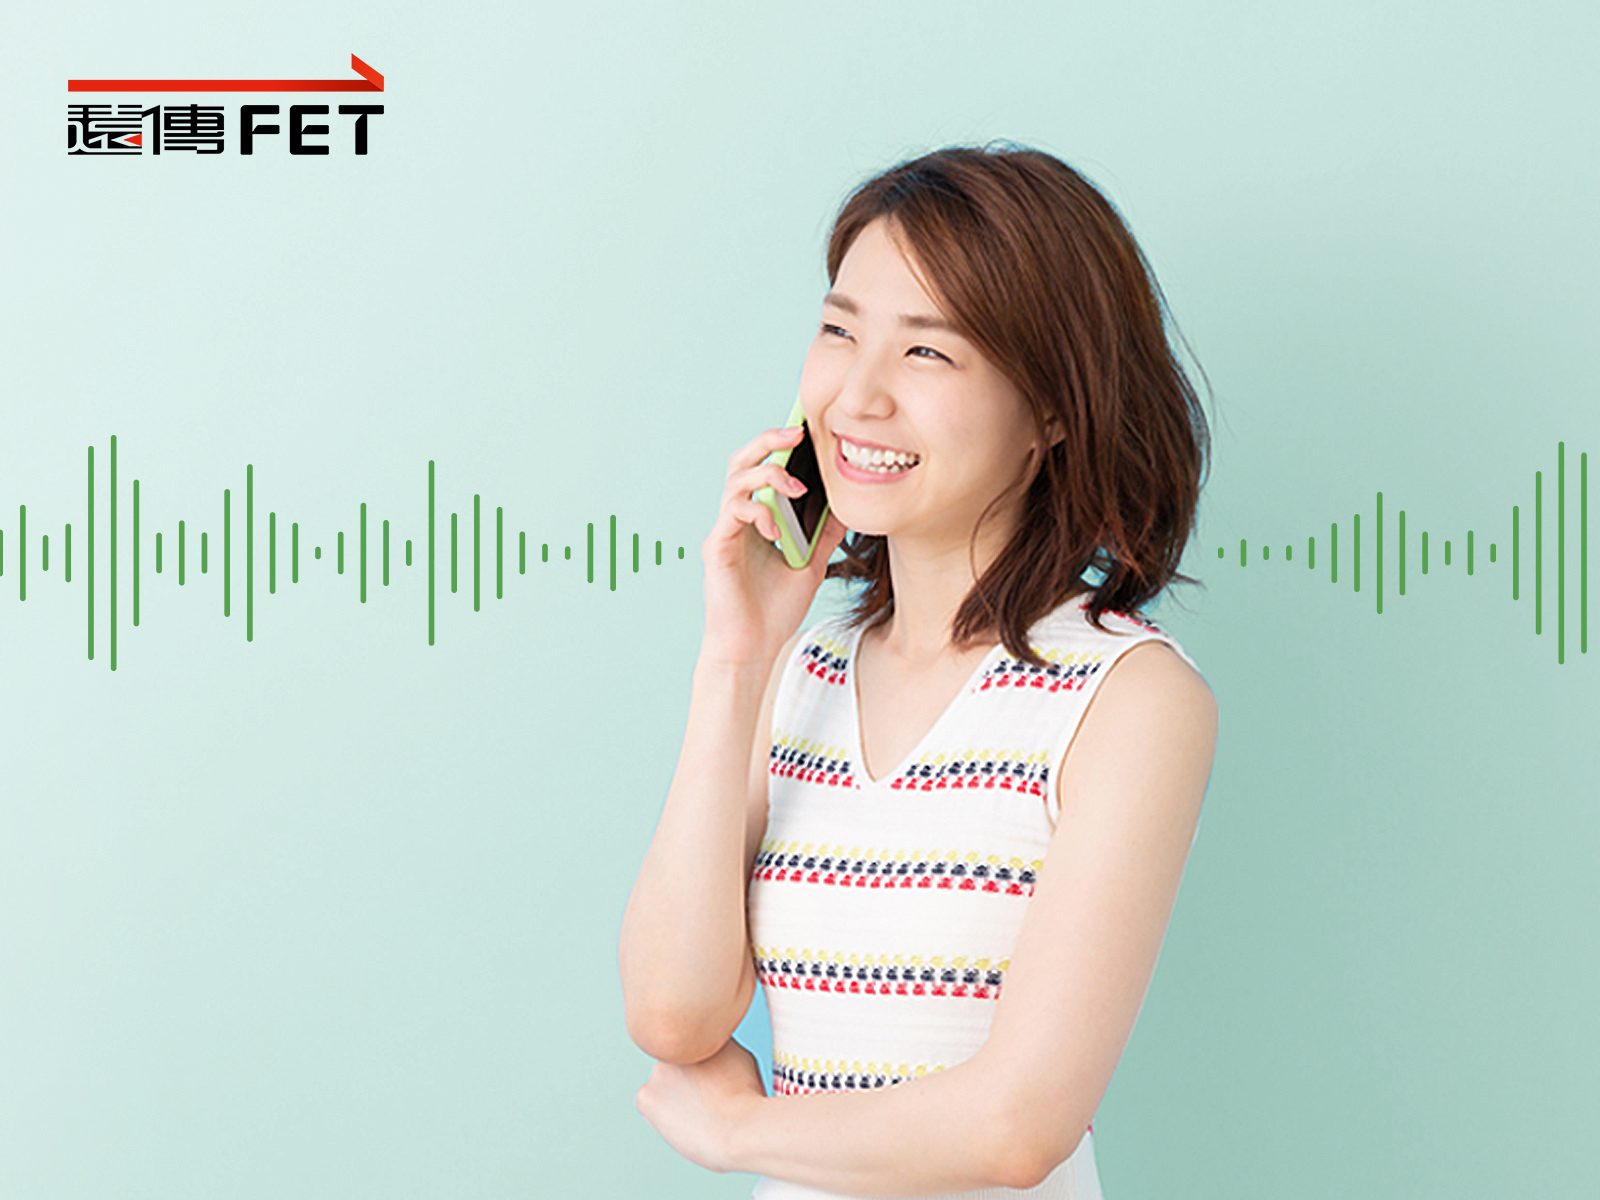 远传电信将于6月30日前完成3G网路关闭，帮助台湾电信市场顺利迈向高音质4G通话（VoLTE）时代。图／远传电信提供